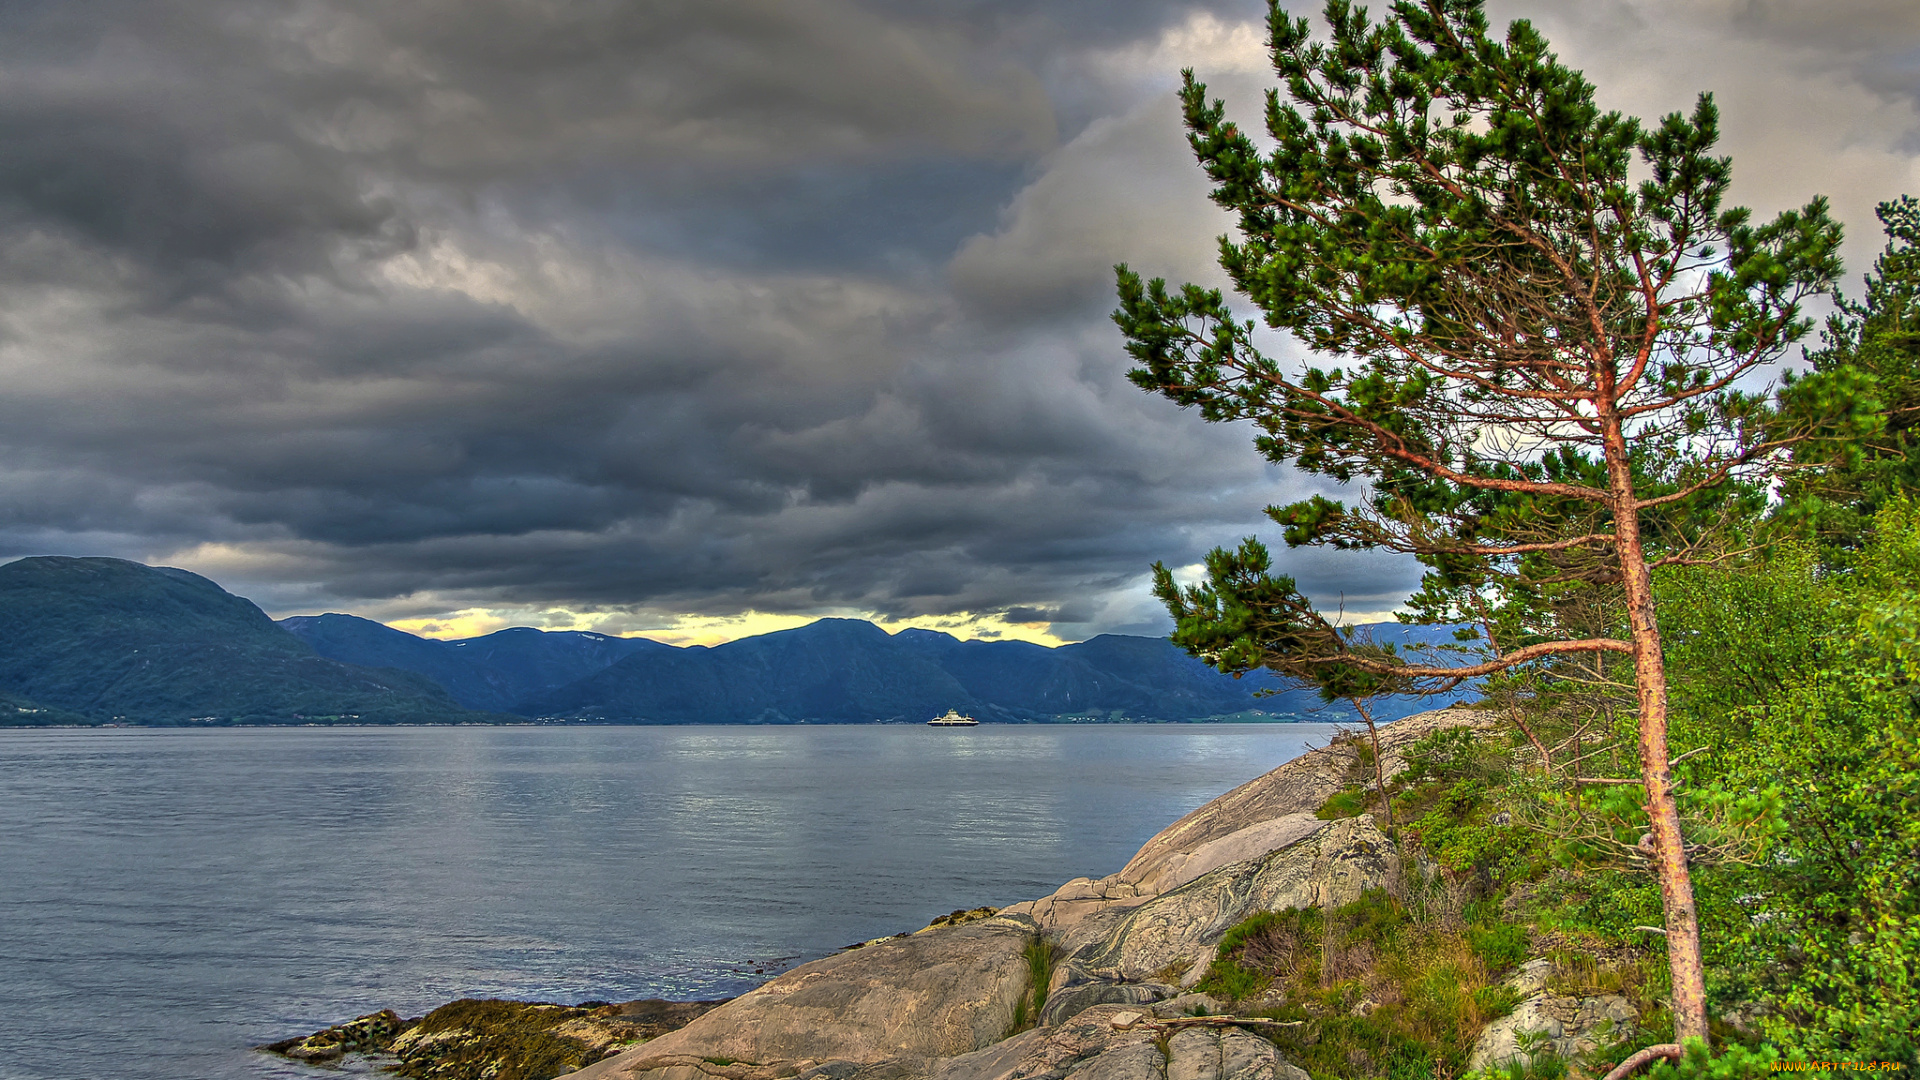 sognefjord, norway, природа, побережье, согне-фьорд, норвегия, дерево, сосна, горы, облака